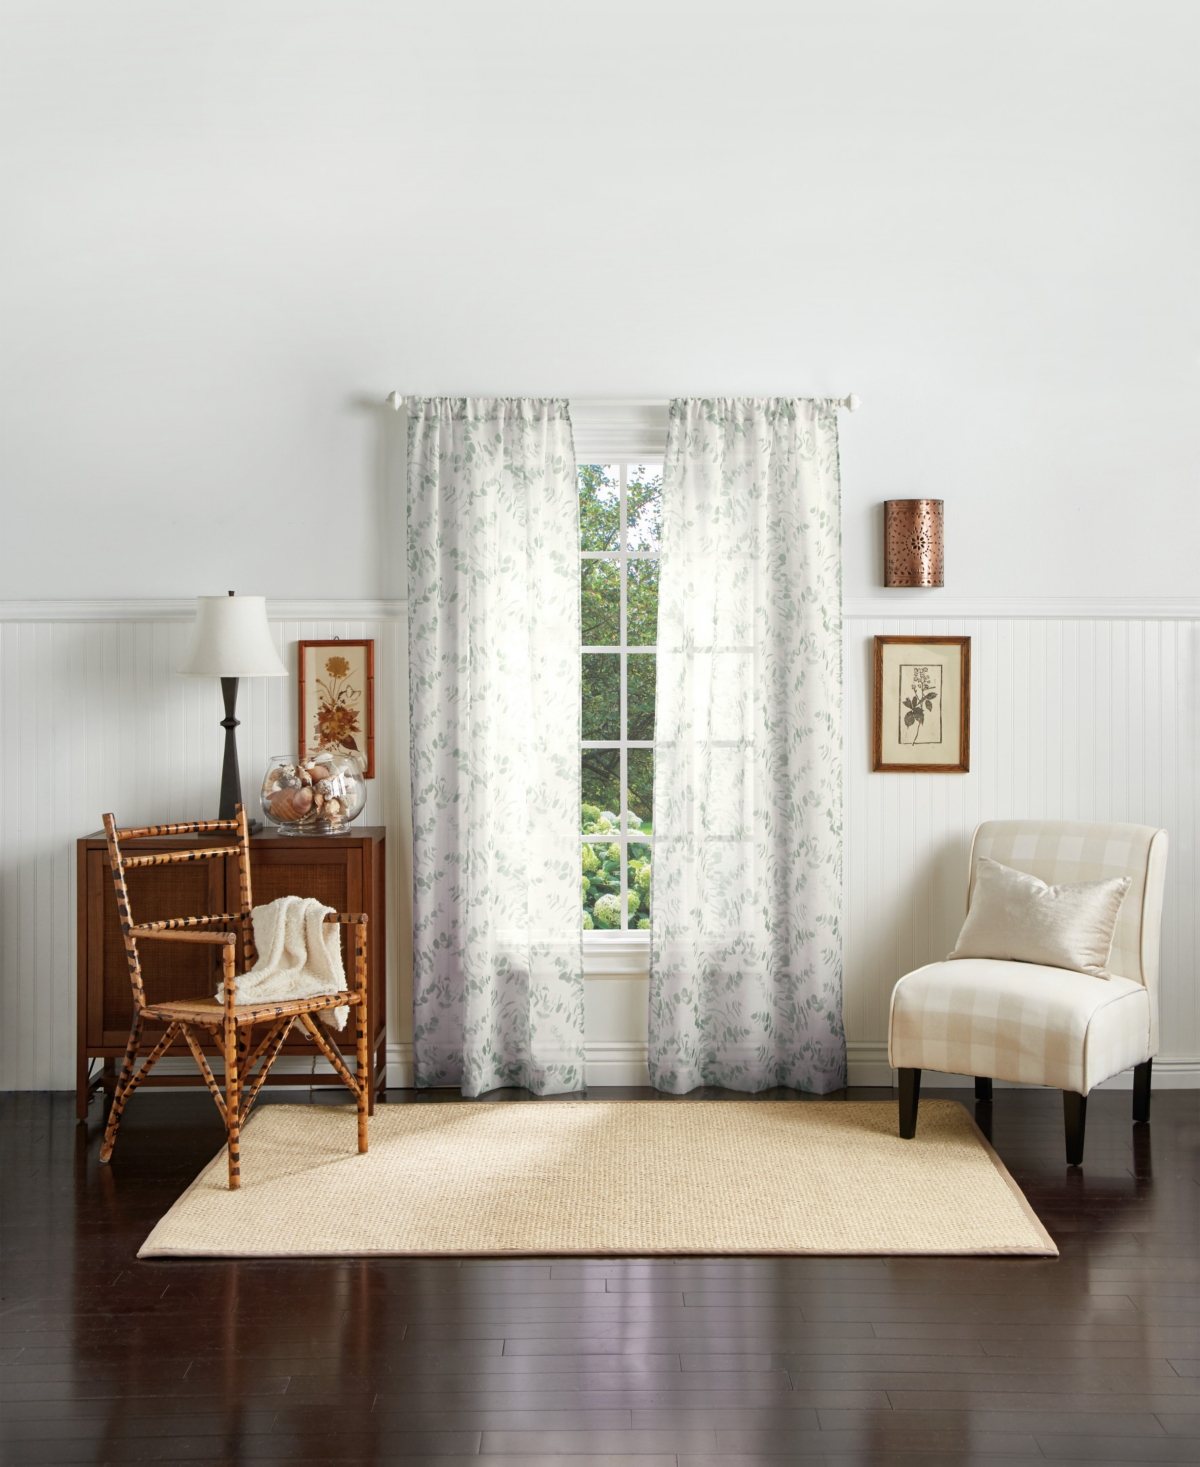 Eucalyptus Poletop Curtain Panel, 95", Created For Macy's - Grey